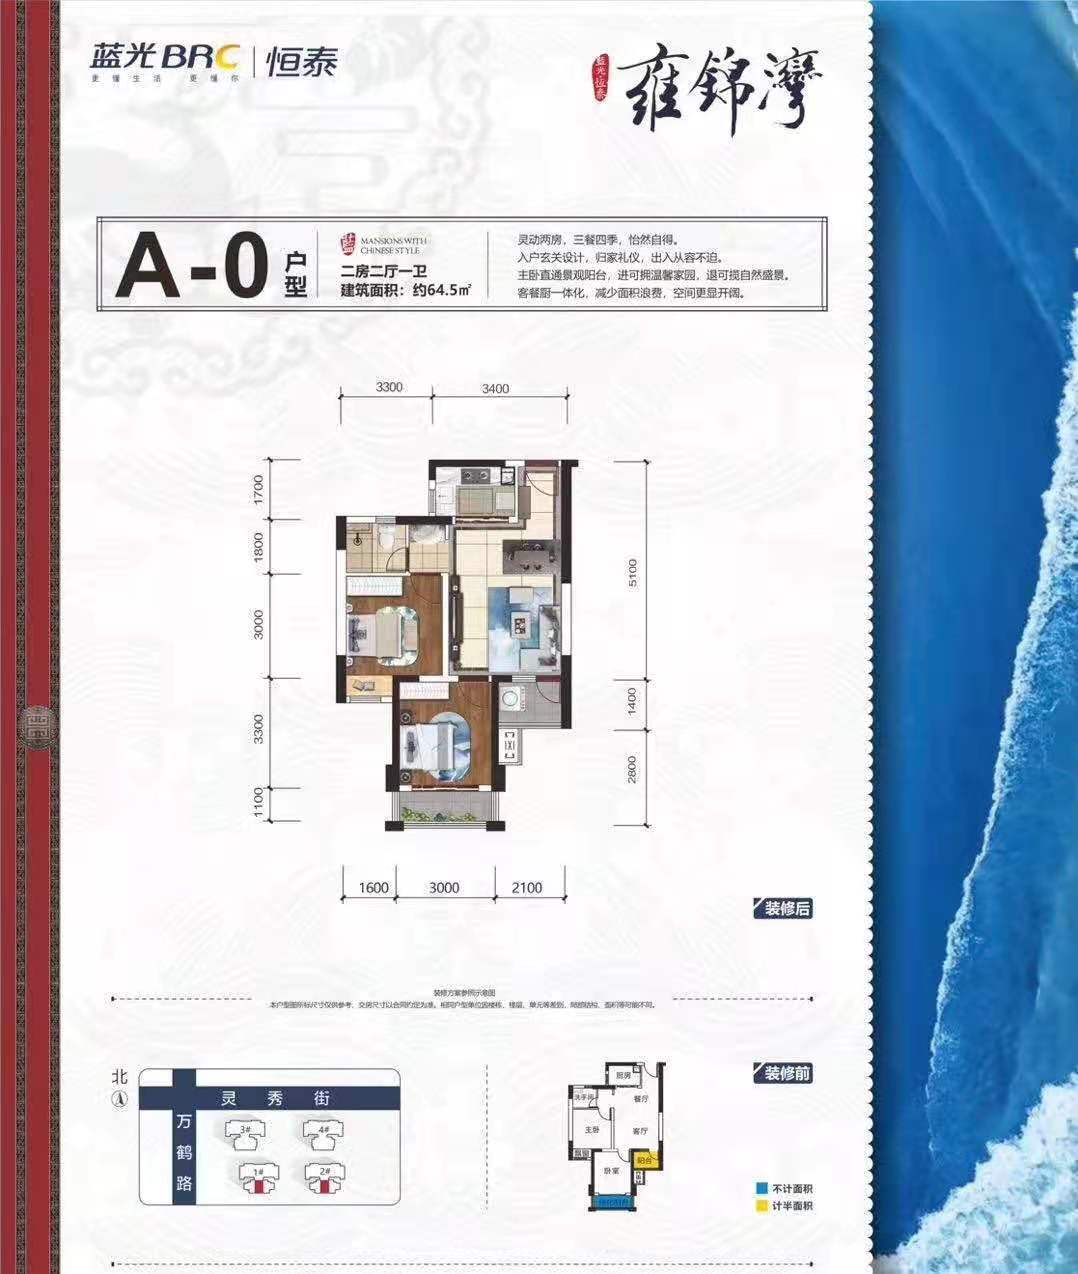 蓝光恒泰雍锦湾 A-0户型 两房两厅一卫